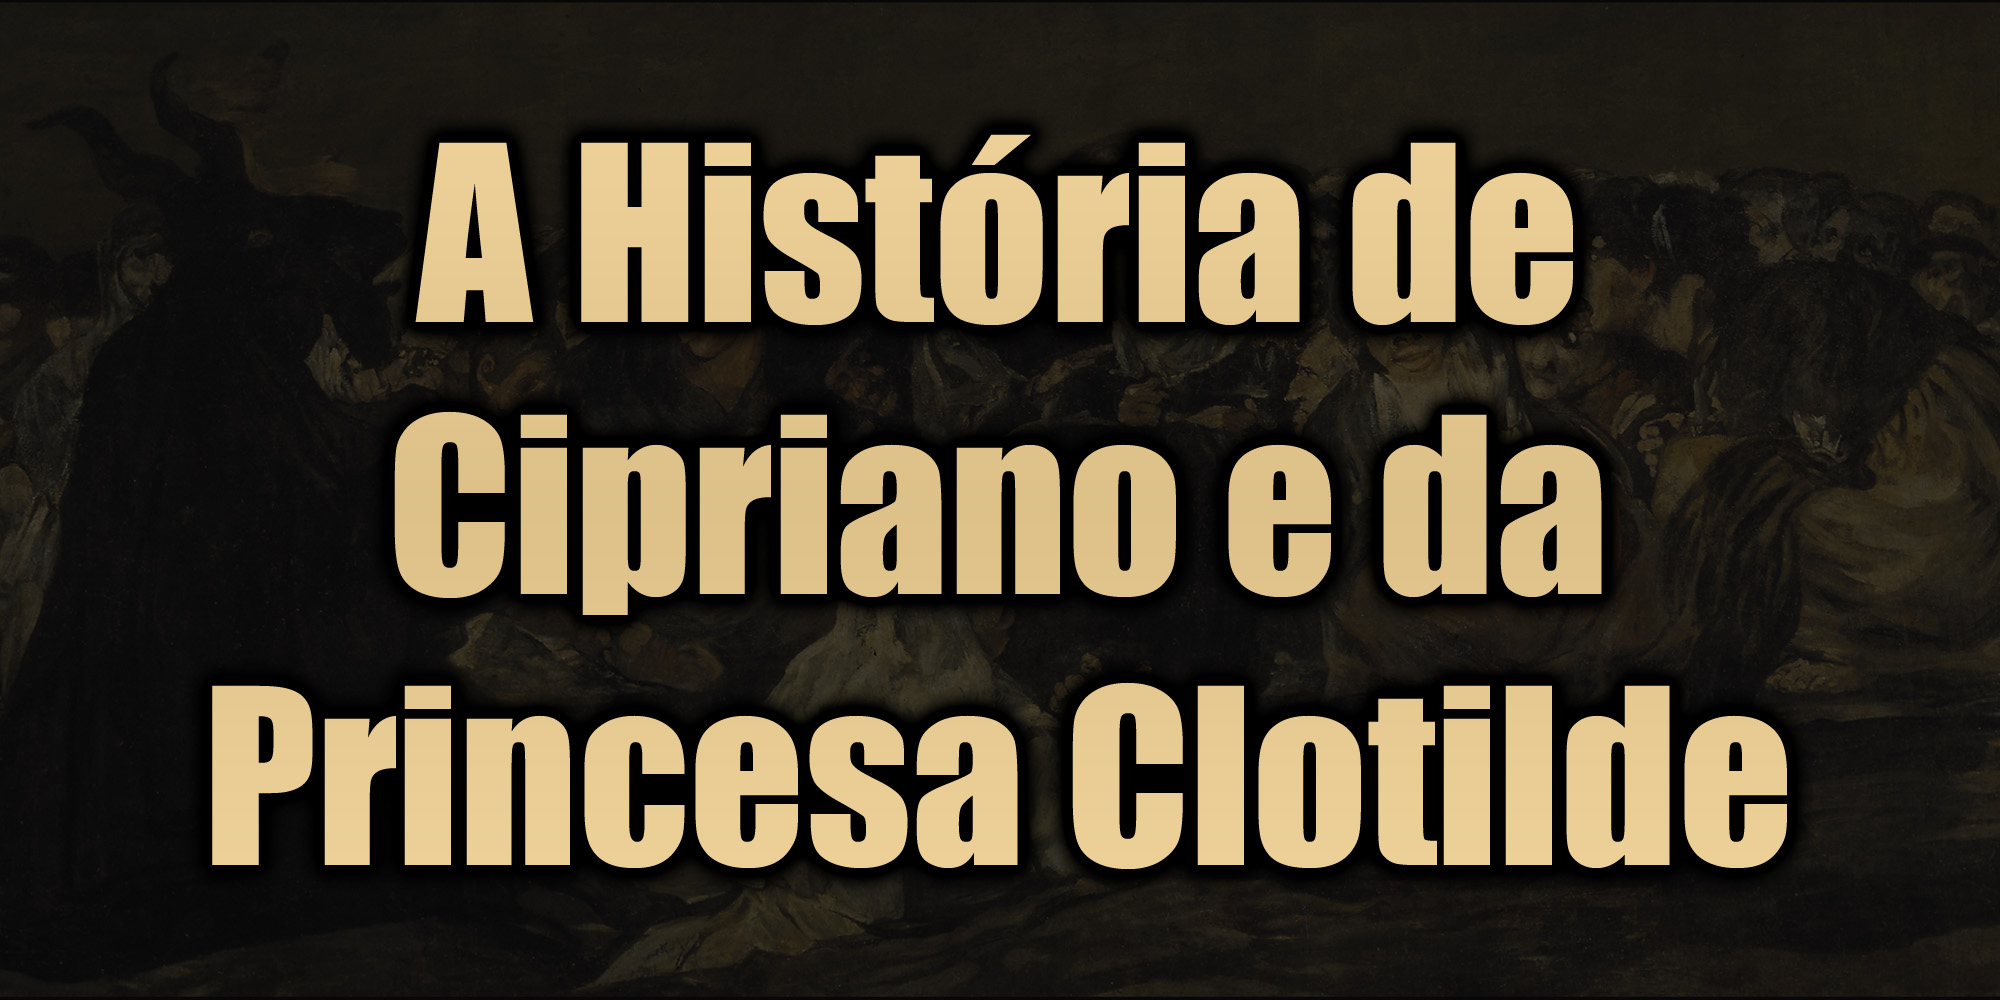 A História de Cipriano e da Princesa Clotilde